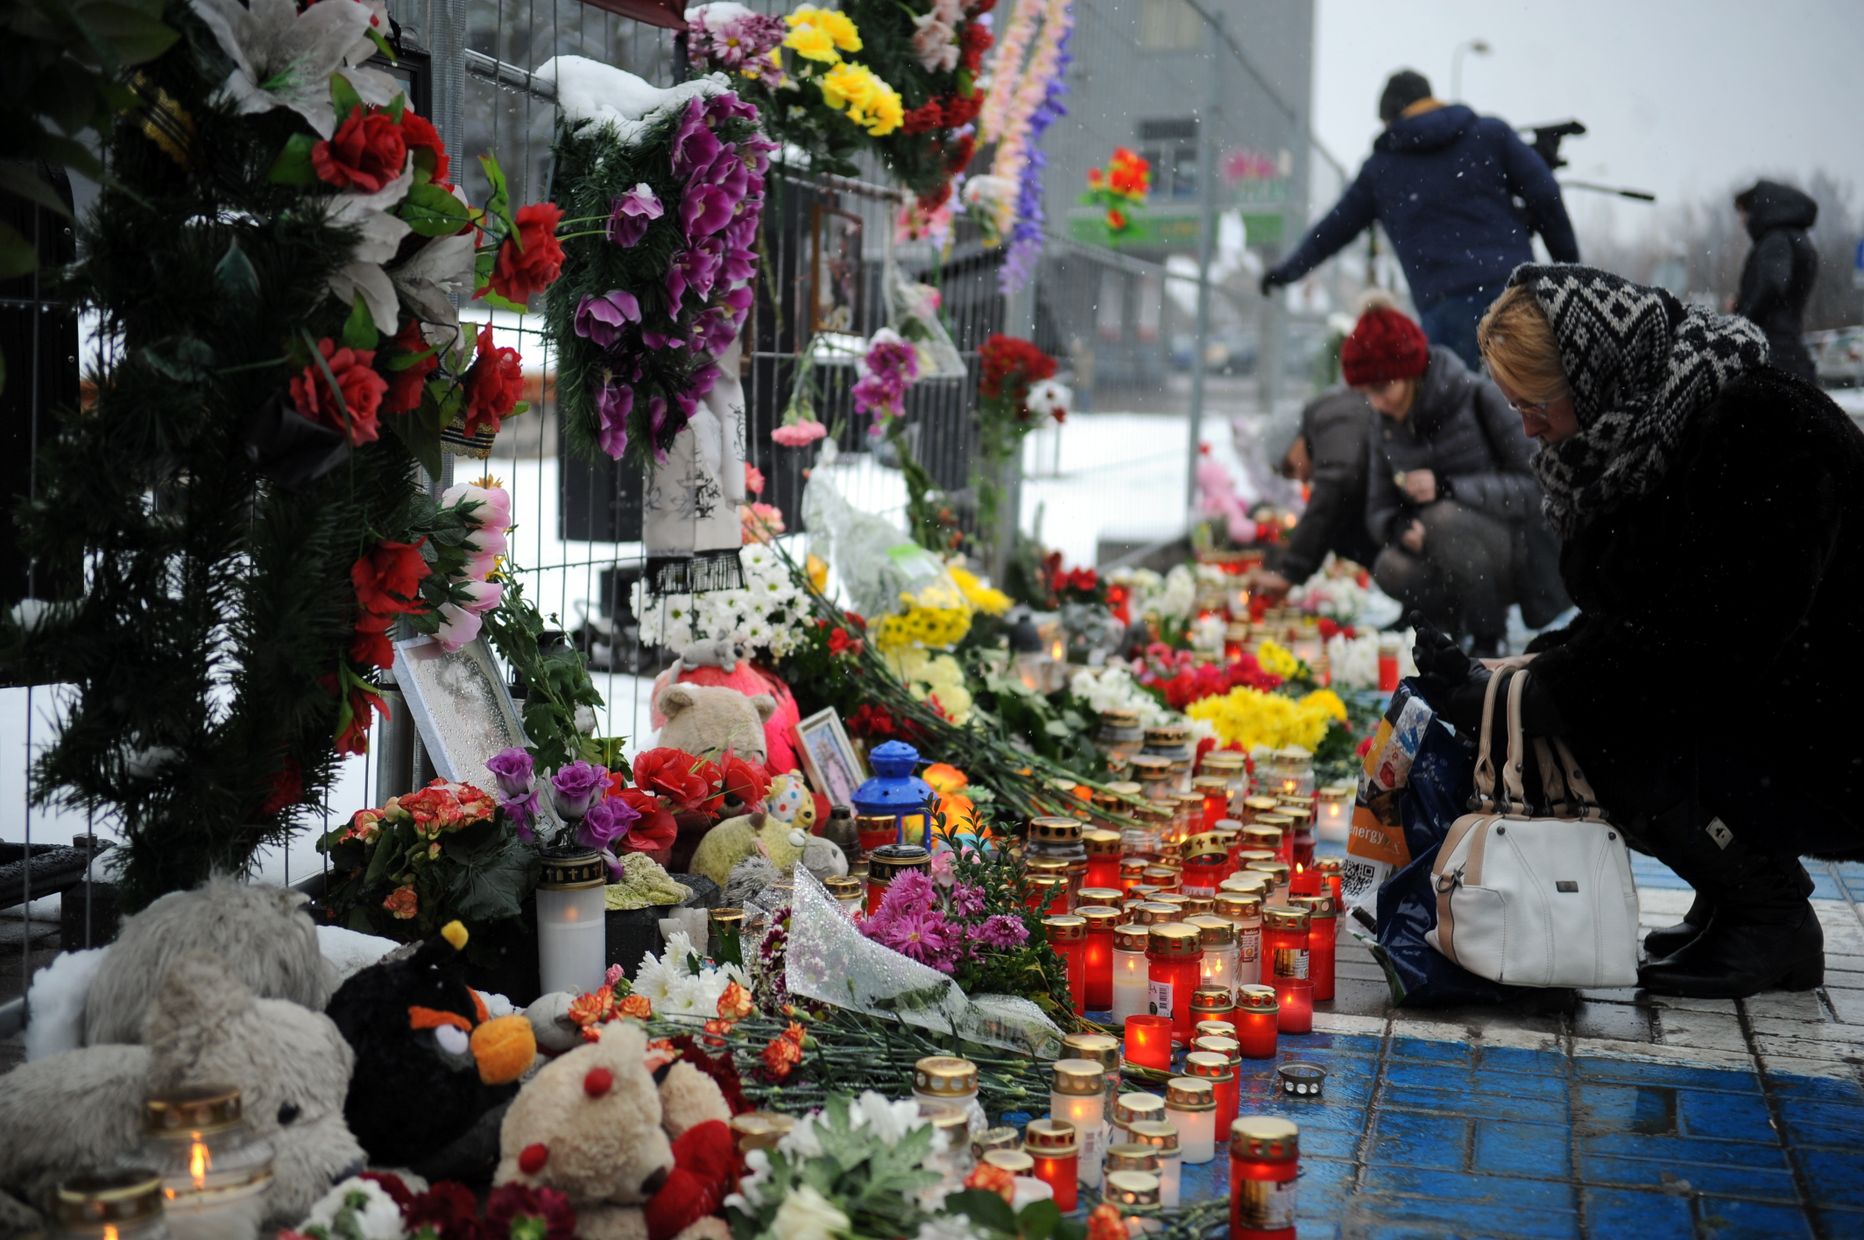 Cilvēki noliek ziedus un iededz svecītes Zolitūdes traģēdijas vietā.